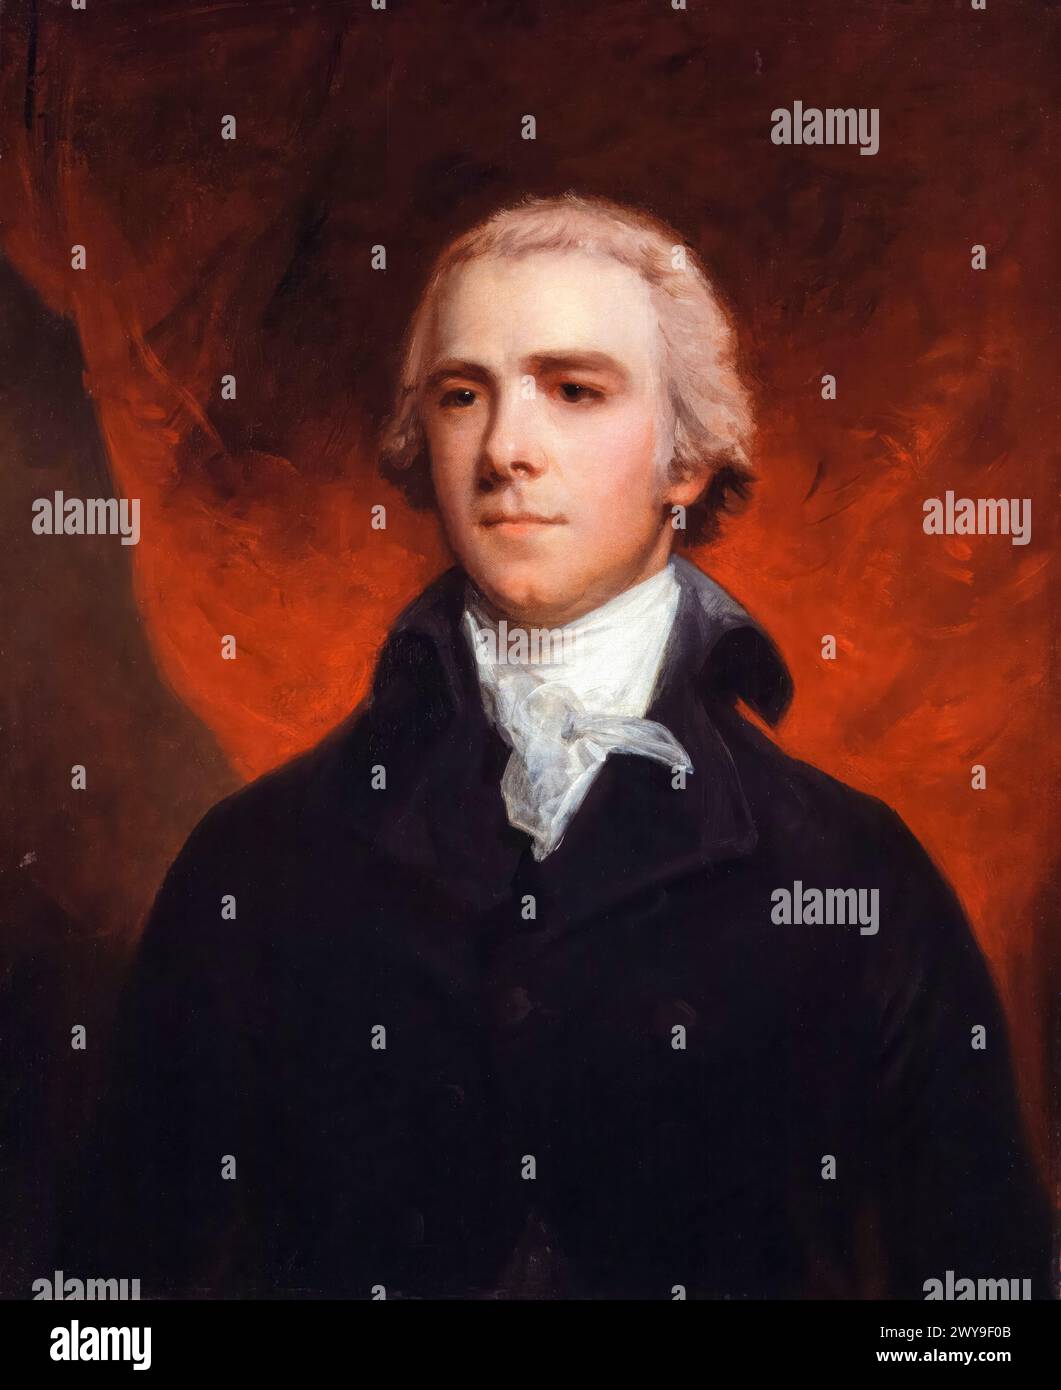 William Grenville, 1er baron Grenville (1759-1834), homme politique conservateur et premier ministre du Royaume-Uni de 1806 à 1807, portrait peint à l'huile sur toile par John Hoppner, vers 1800 Banque D'Images